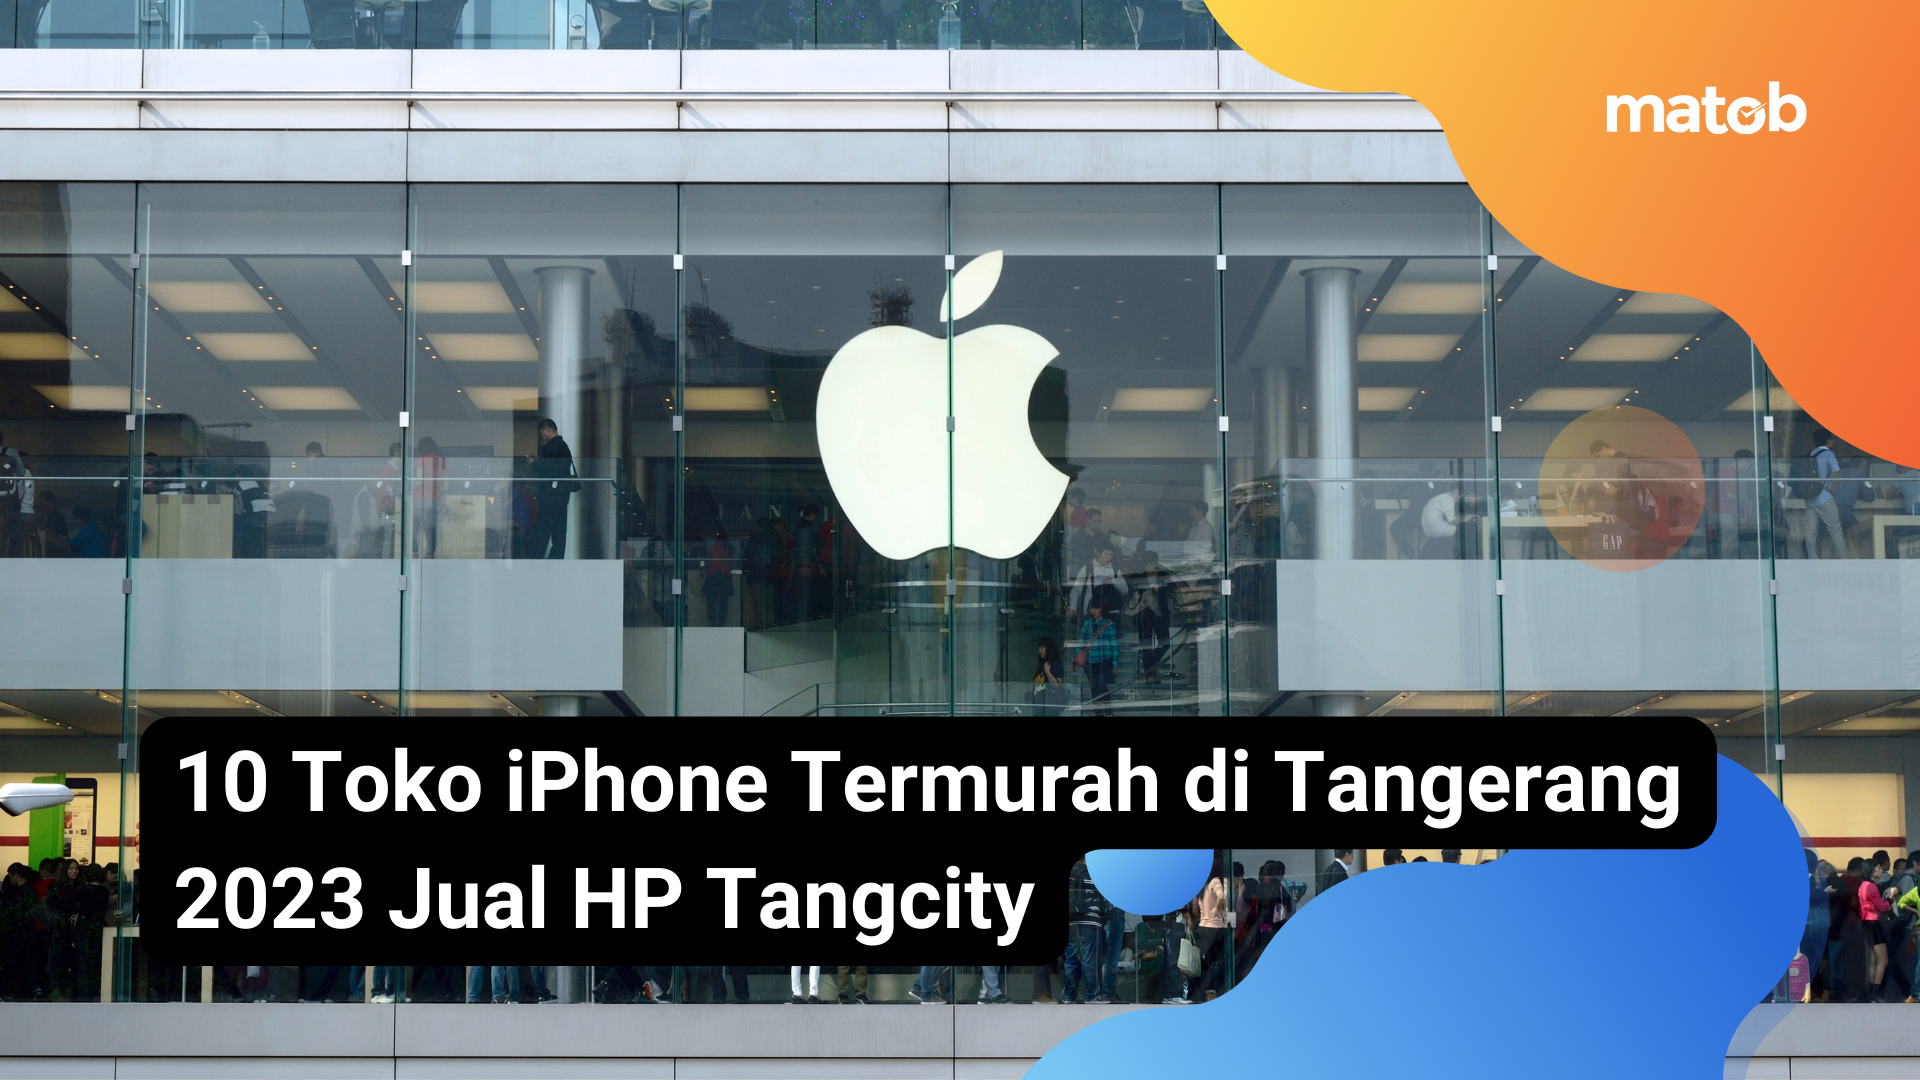 9 Matob Bisnis 10 Toko iPhone Termurah di Tangerang 2023 Jual HP Tangcity